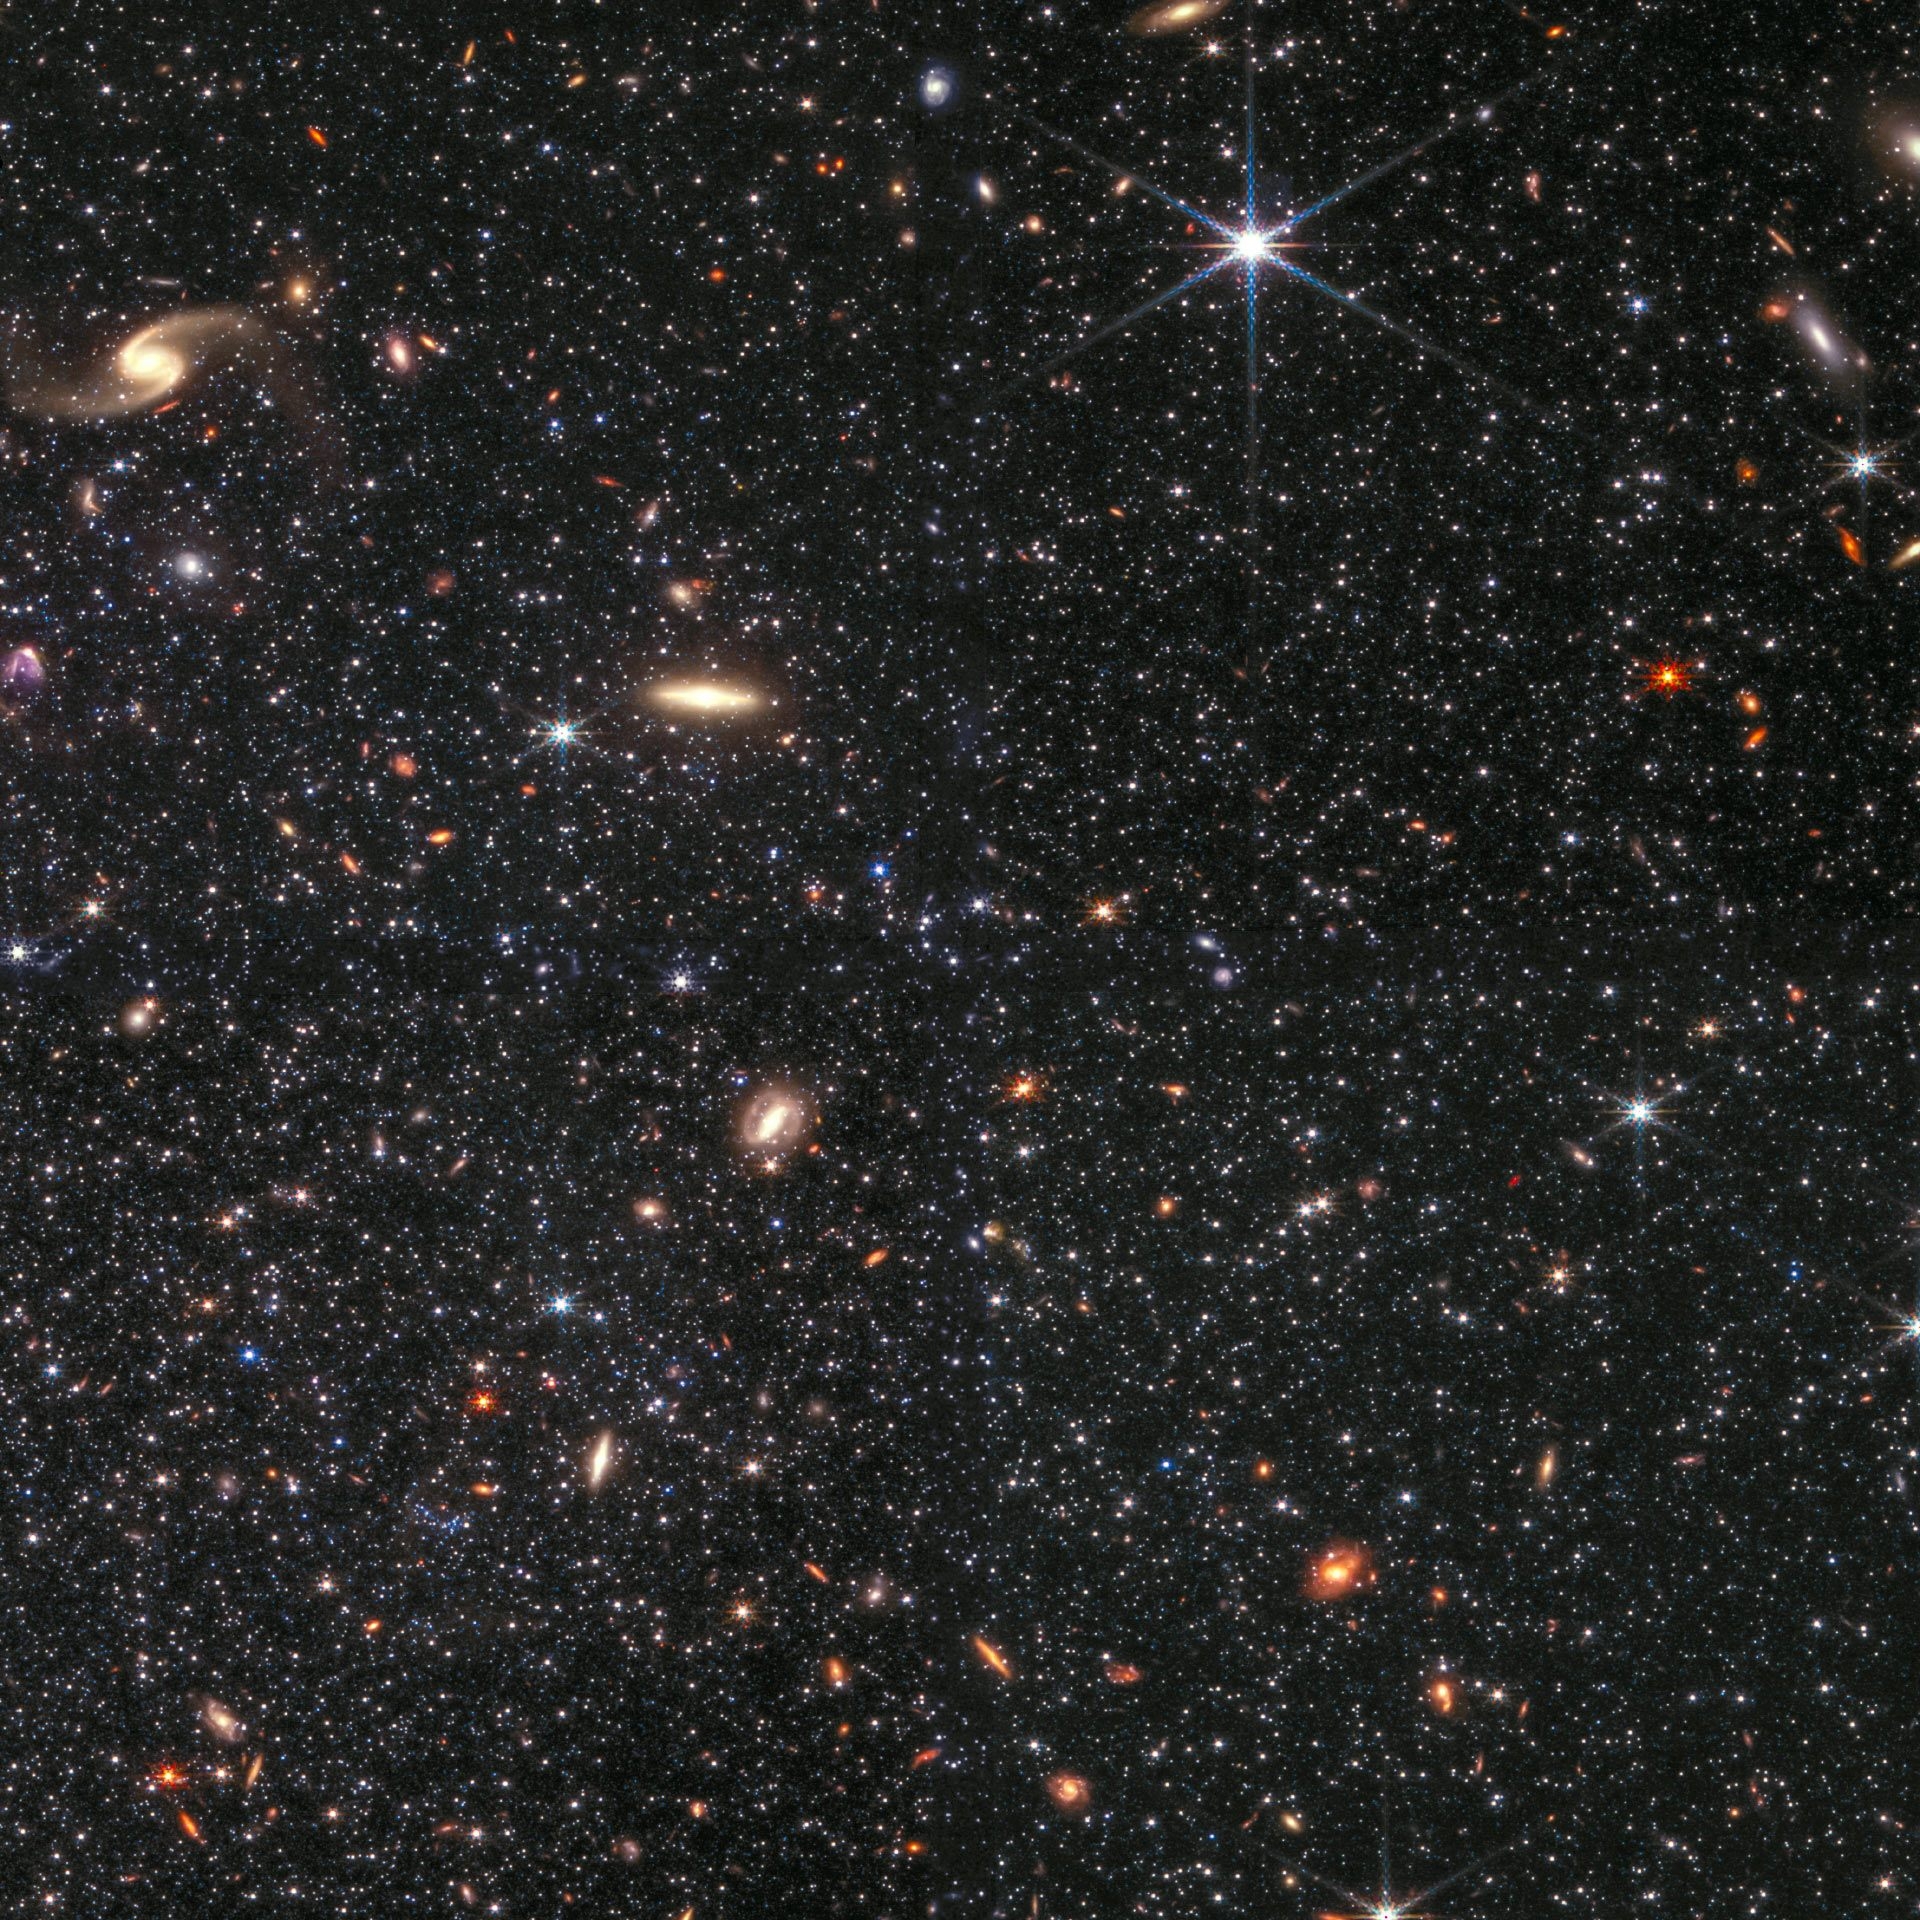 由韋伯太空望遠鏡近紅外相機（NIRCam）所拍攝，影像中顯示了WLM中無數恆星以及數十個背景星系。以下顏色分別是NIRCam在不同波段的影像：藍色：0.9微米、青色：1.5微米、黃色：2.5微米、紅色：4.3微米。圖片來源：NASA / ESA / CSA / STScI / K. McQuinn